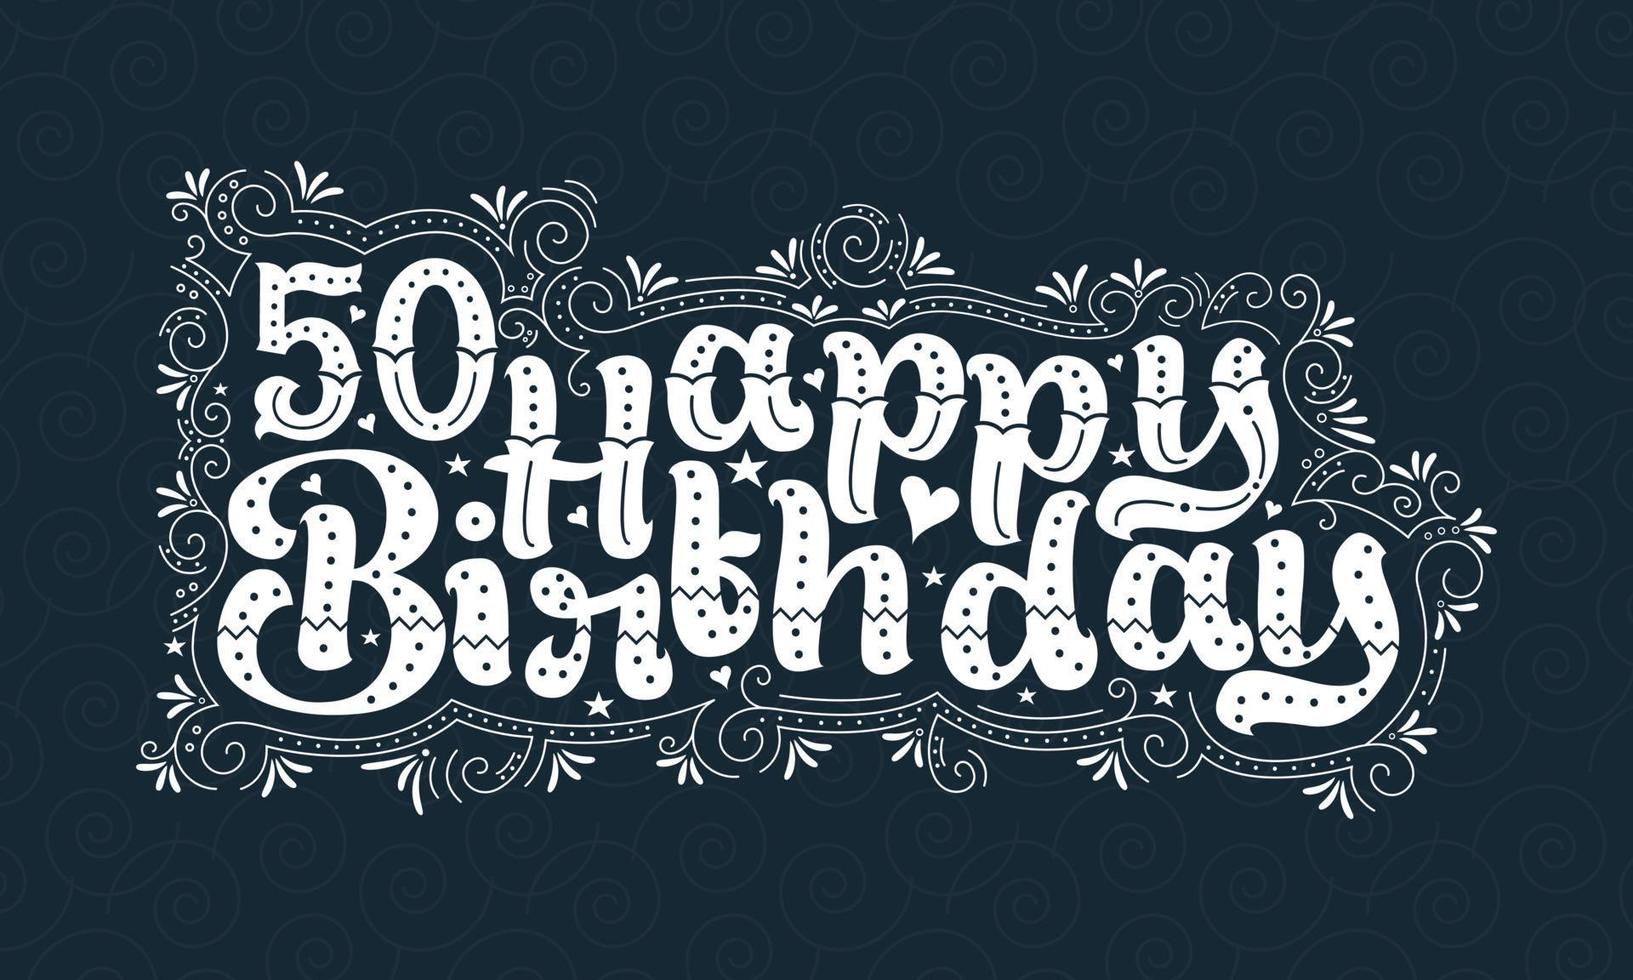 50e gelukkige verjaardag belettering, 50 jaar verjaardag mooi typografieontwerp met stippen, lijnen en bladeren. vector